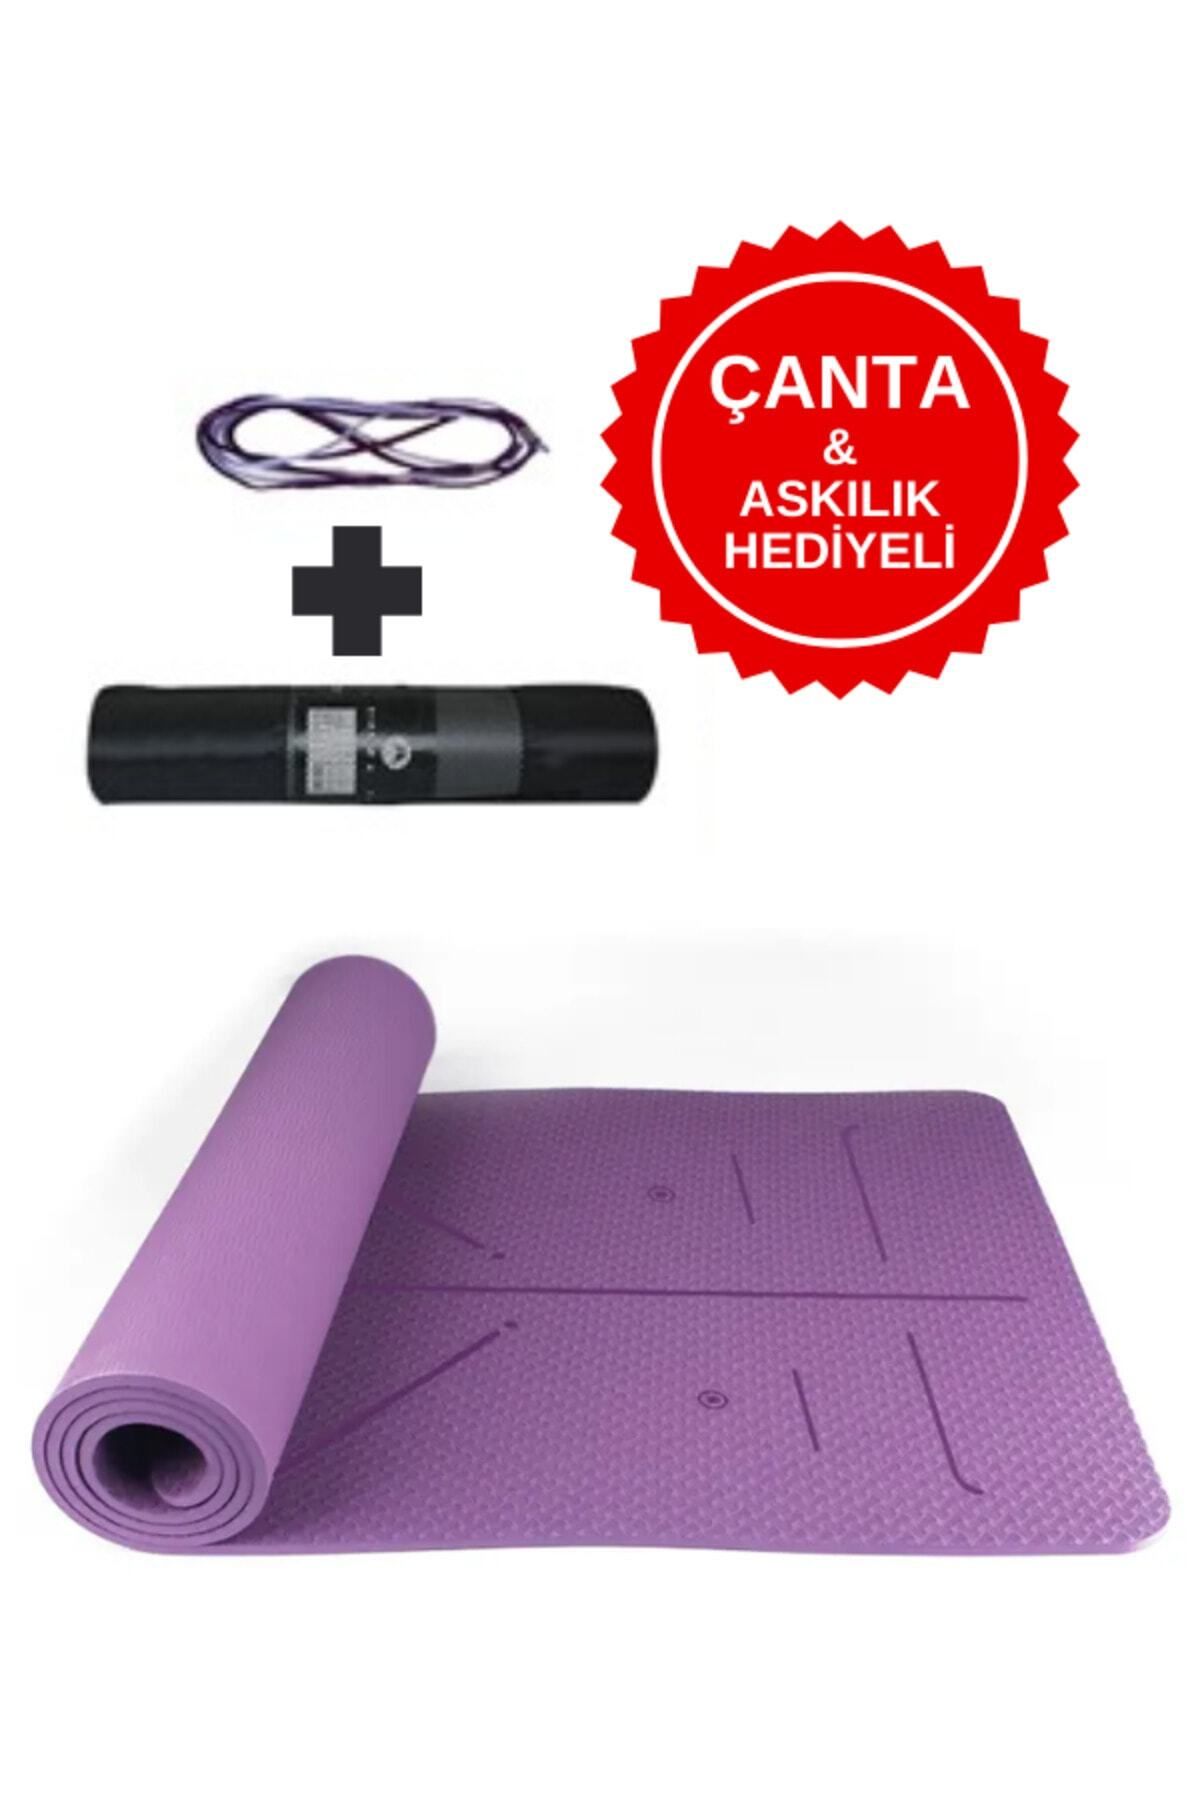 XTR Fitness Ekstra Konforlu Yoga Matı - 8mm Kalınlık, Ekolojik Tpe Pilates Egzersiz Minderi Mor